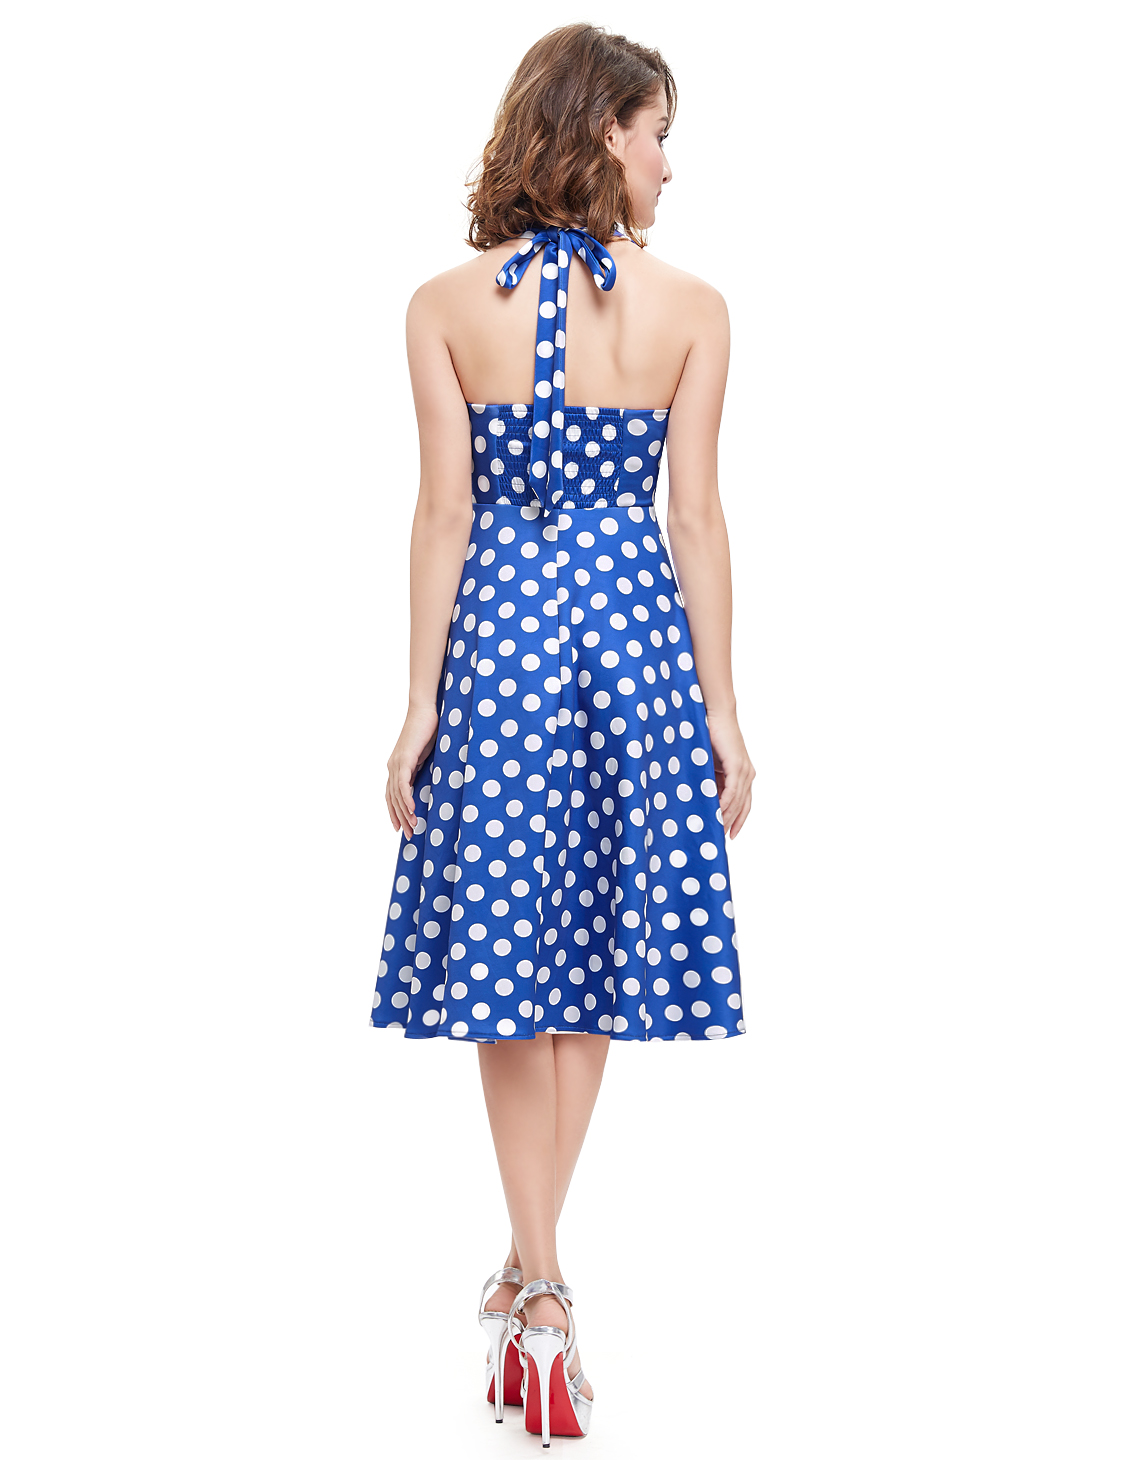 Dámské šaty CORINE s puntíky modrá